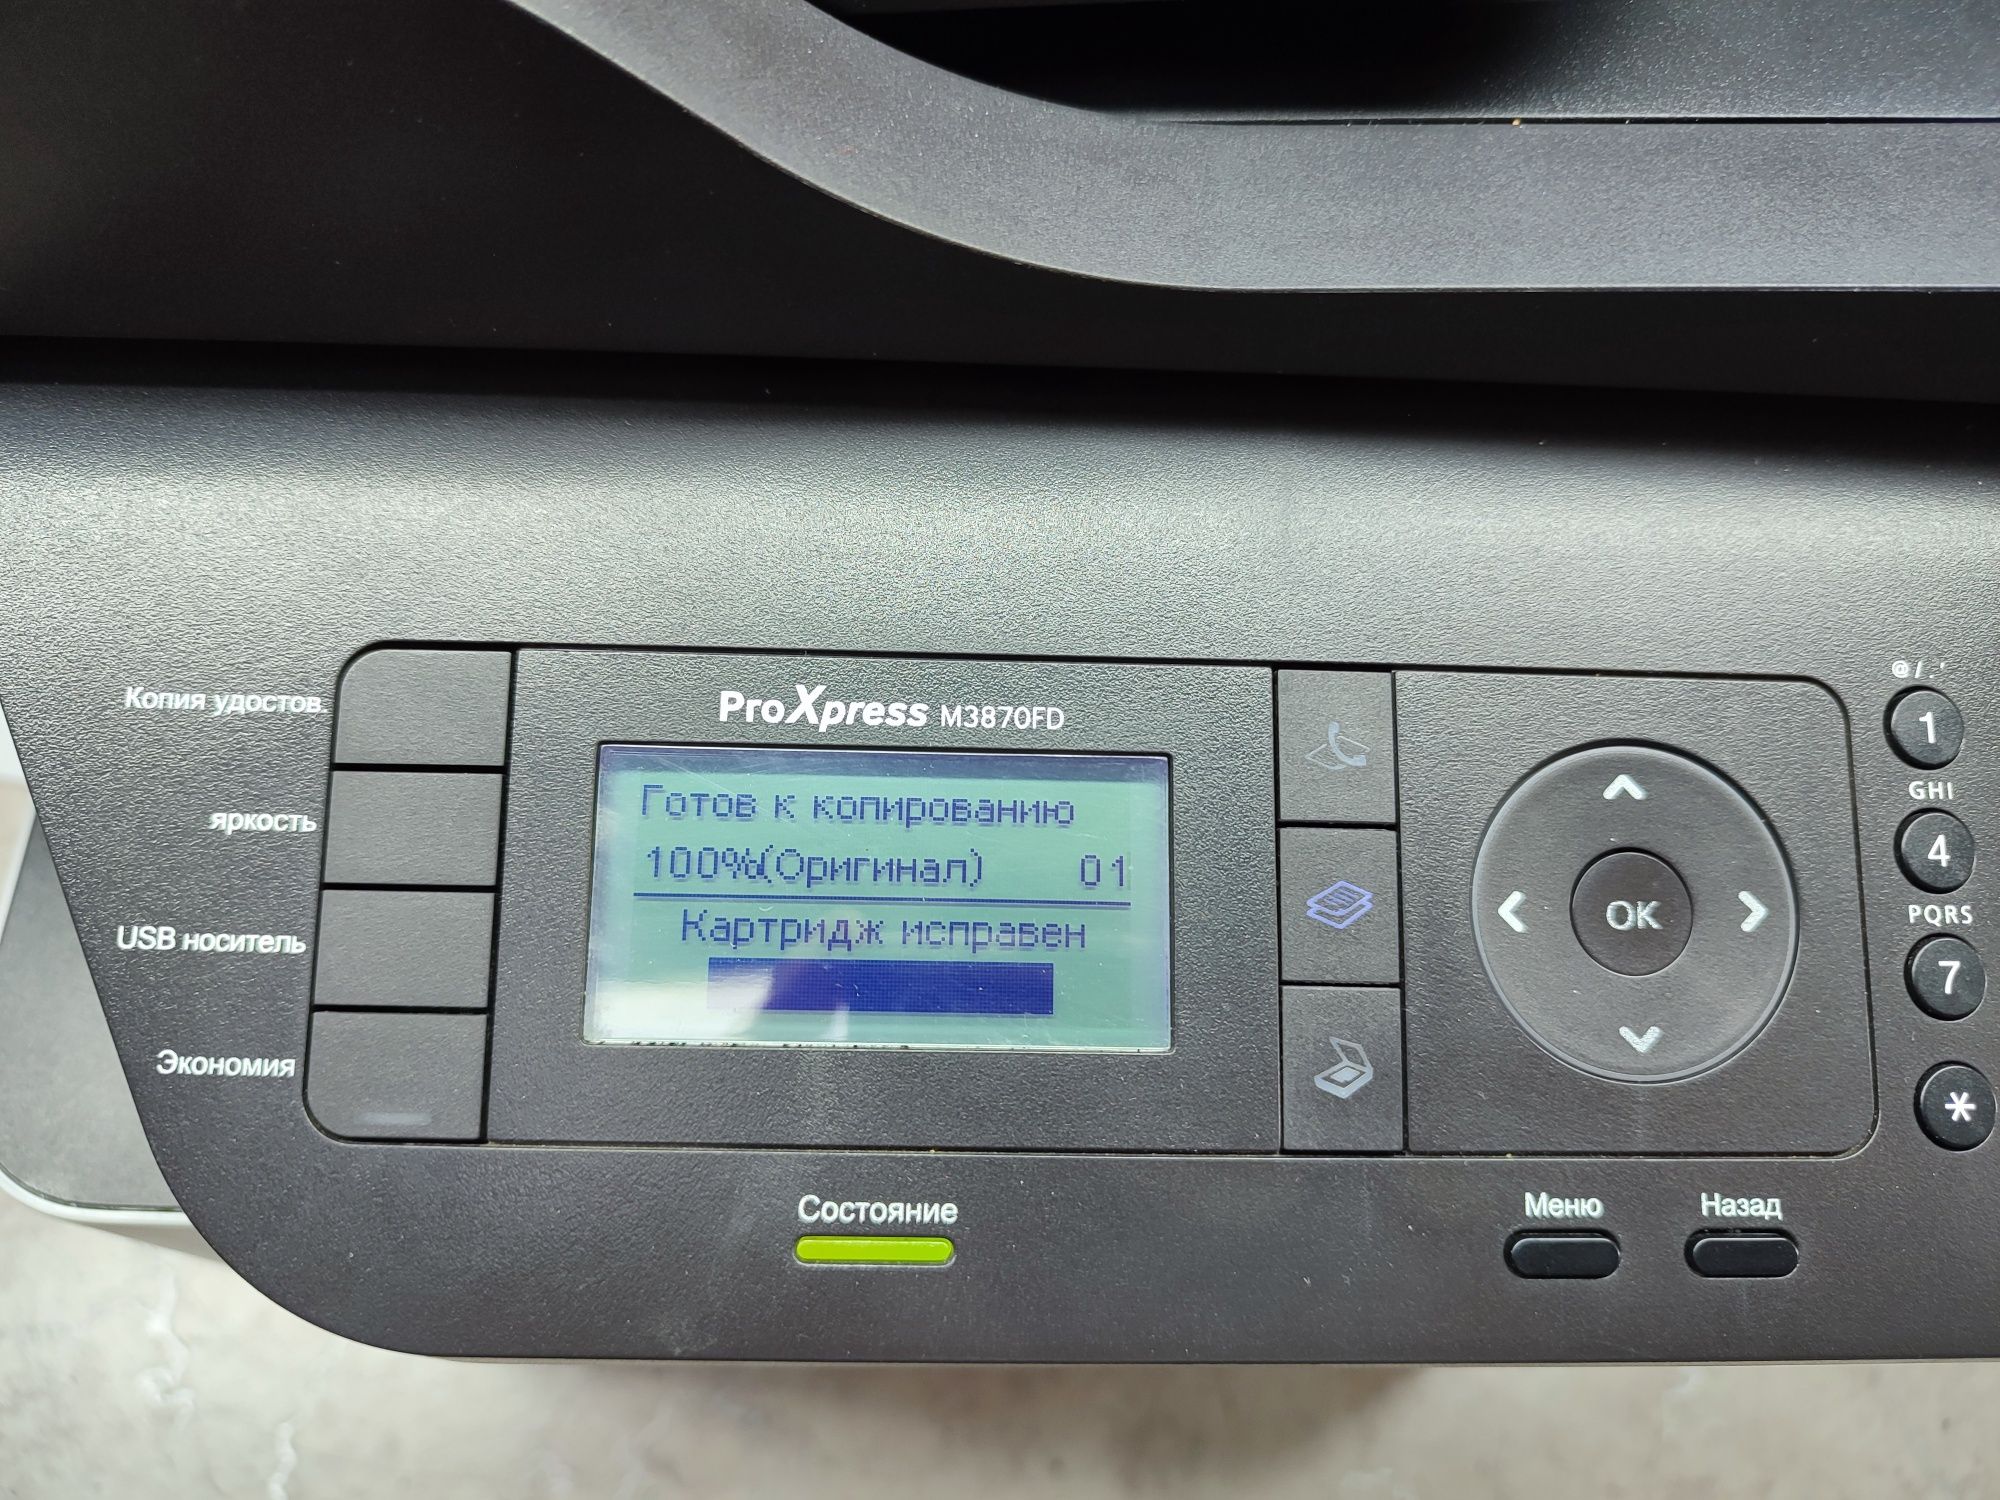 Лазерное МФУ(принтер, сканер, копир(ксерокопия)) Samsung M3870FD